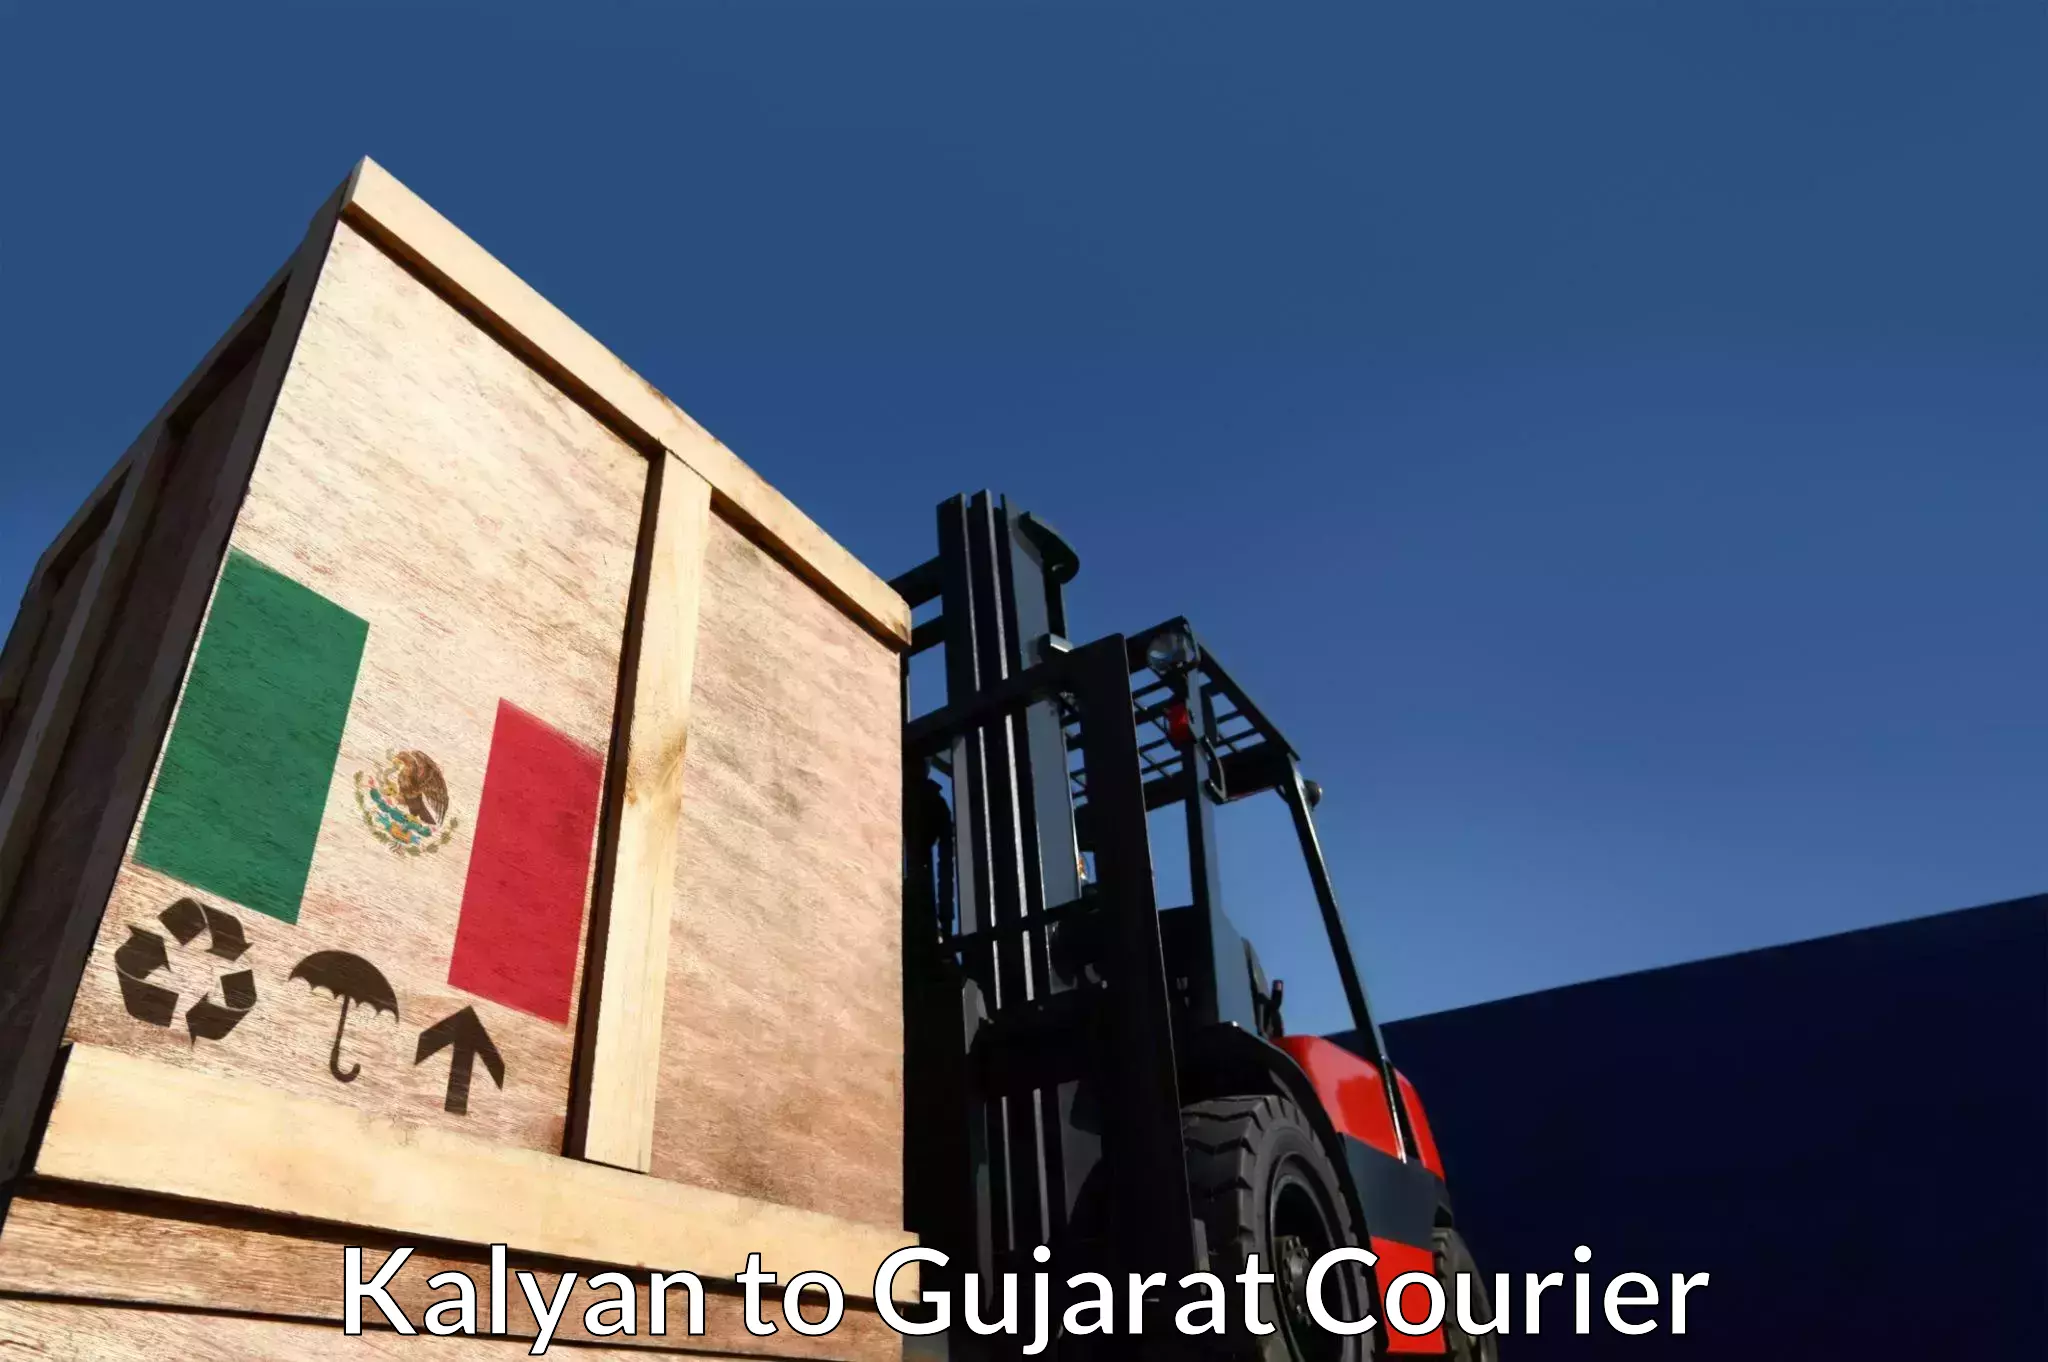 Premium courier services Kalyan to Gandhinagar